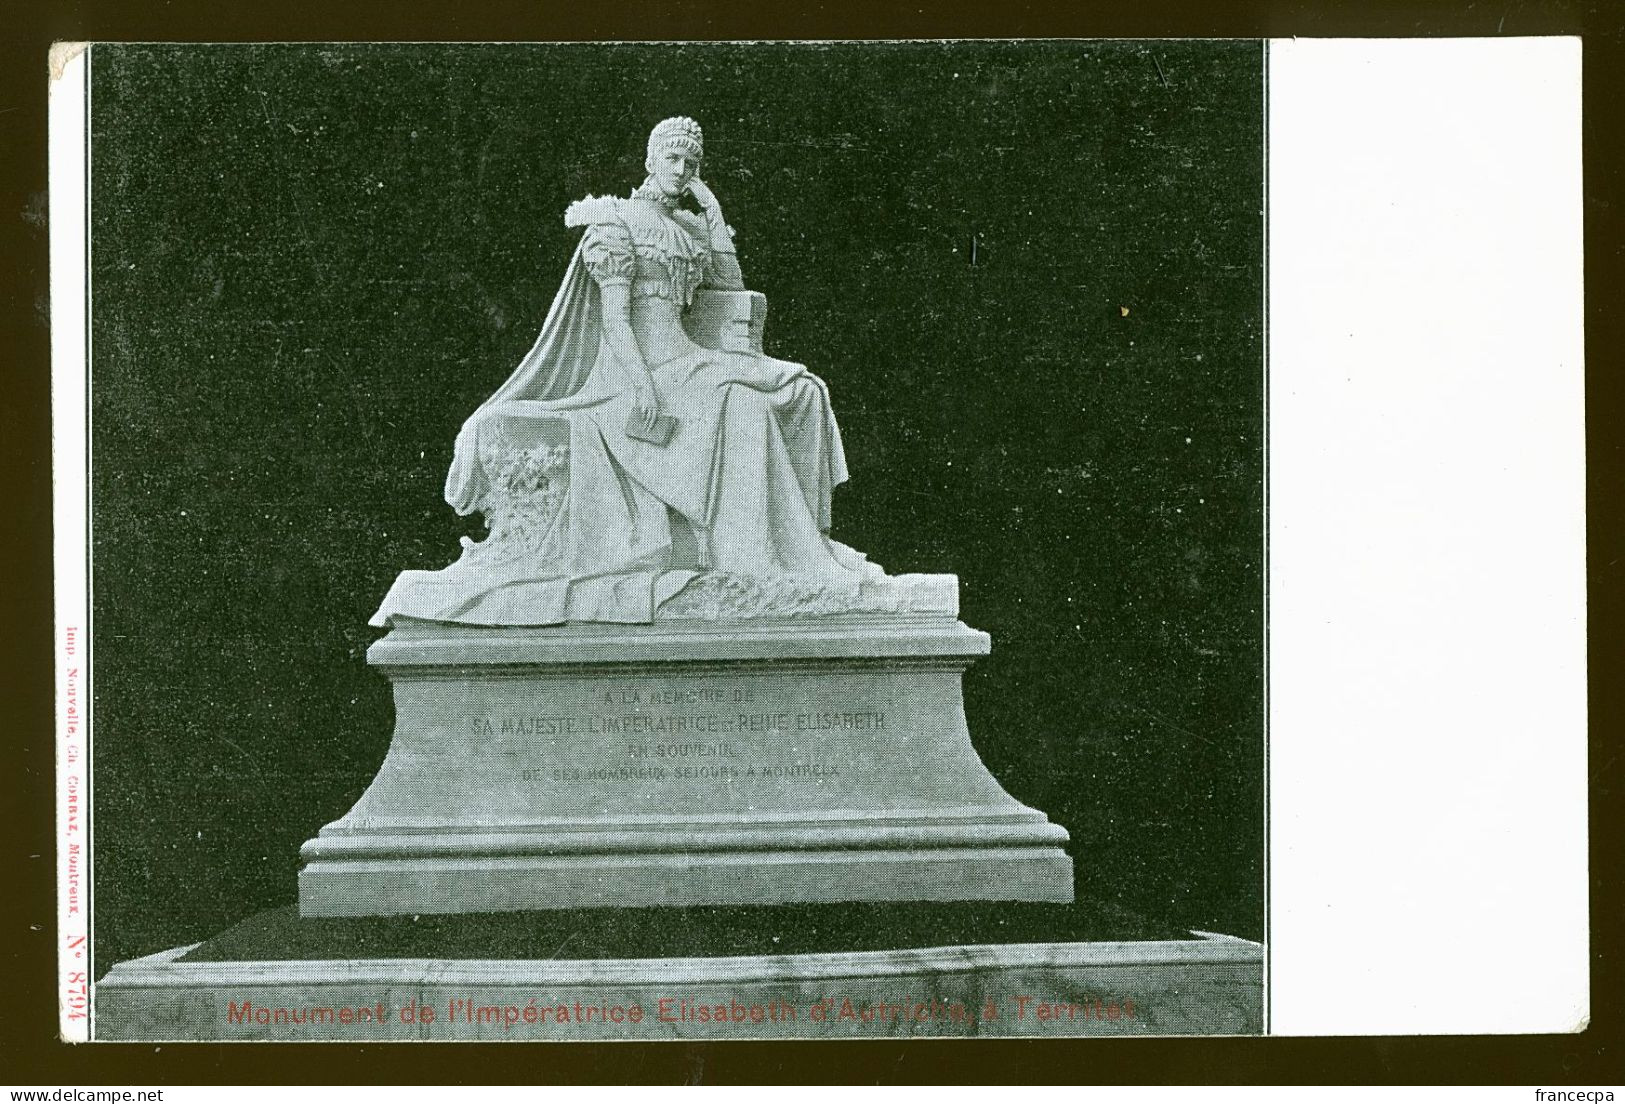 14809 - SUISSE - MONTREUX - Monument De L'Impératrice Elisabeth D'Autriche à Territet  - DOS NON DIVISE - Montreux